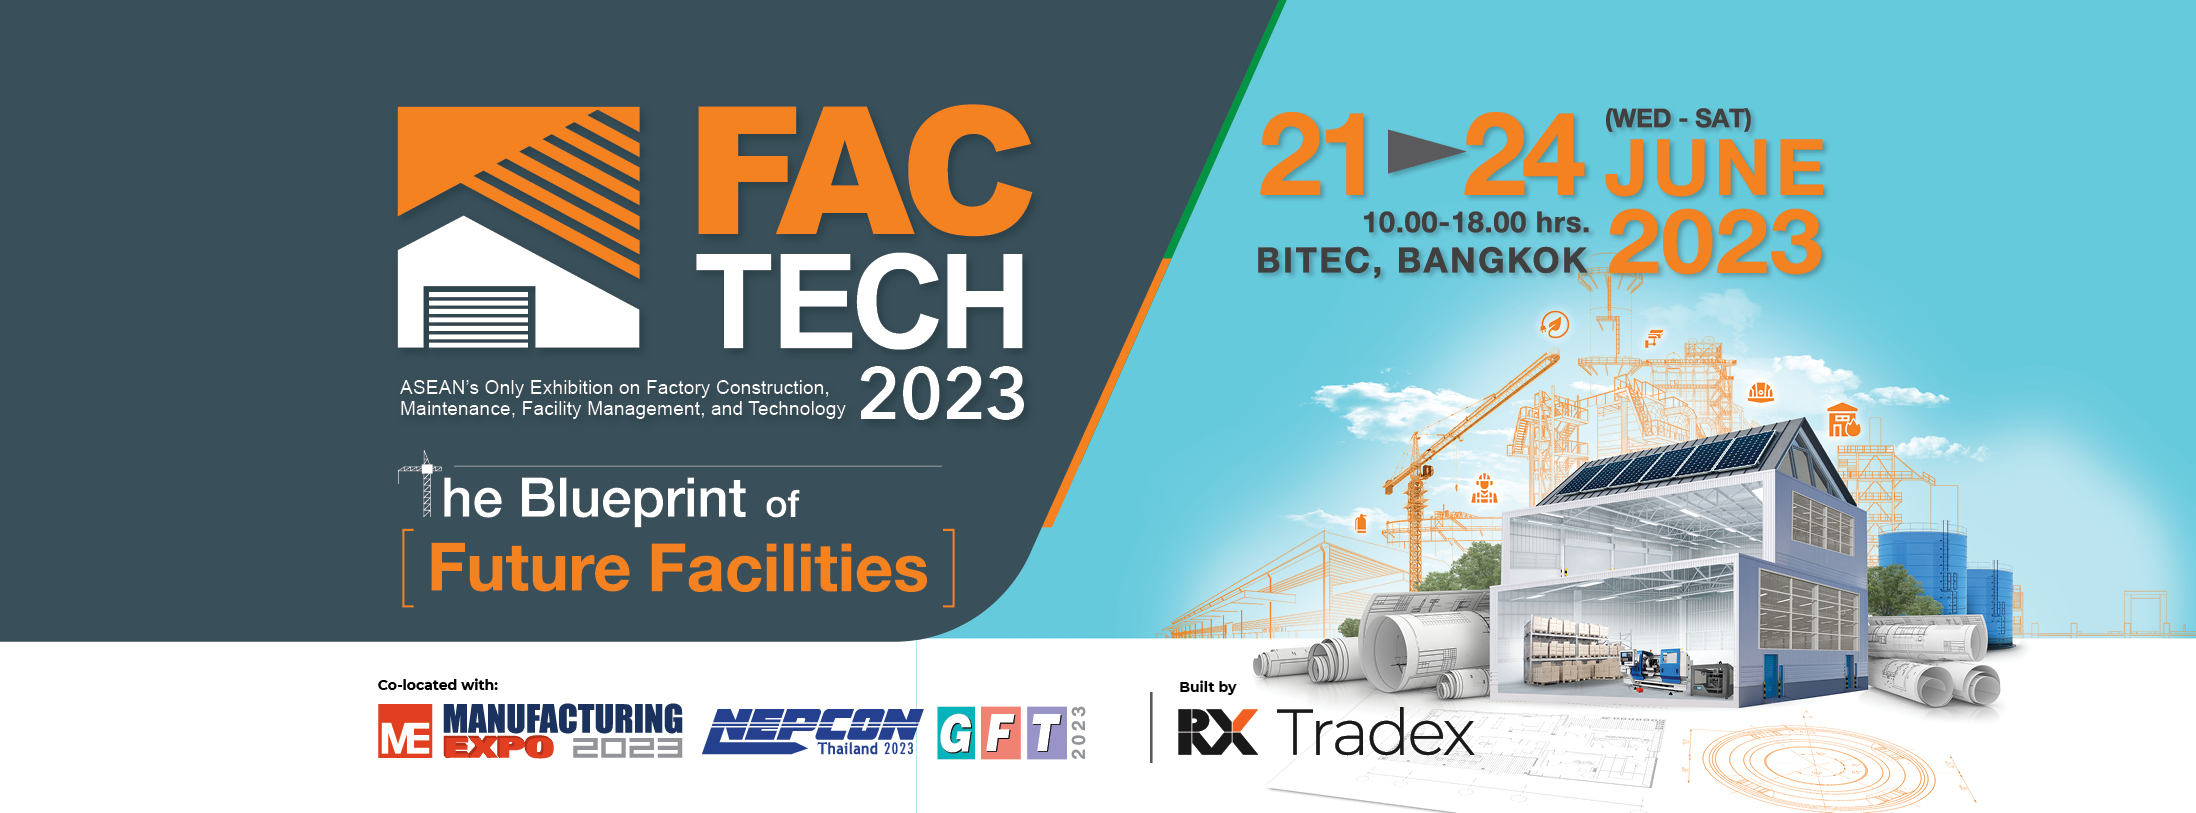 FACTECH 2023, Bangkok Thailand, Bangkok, Thailand